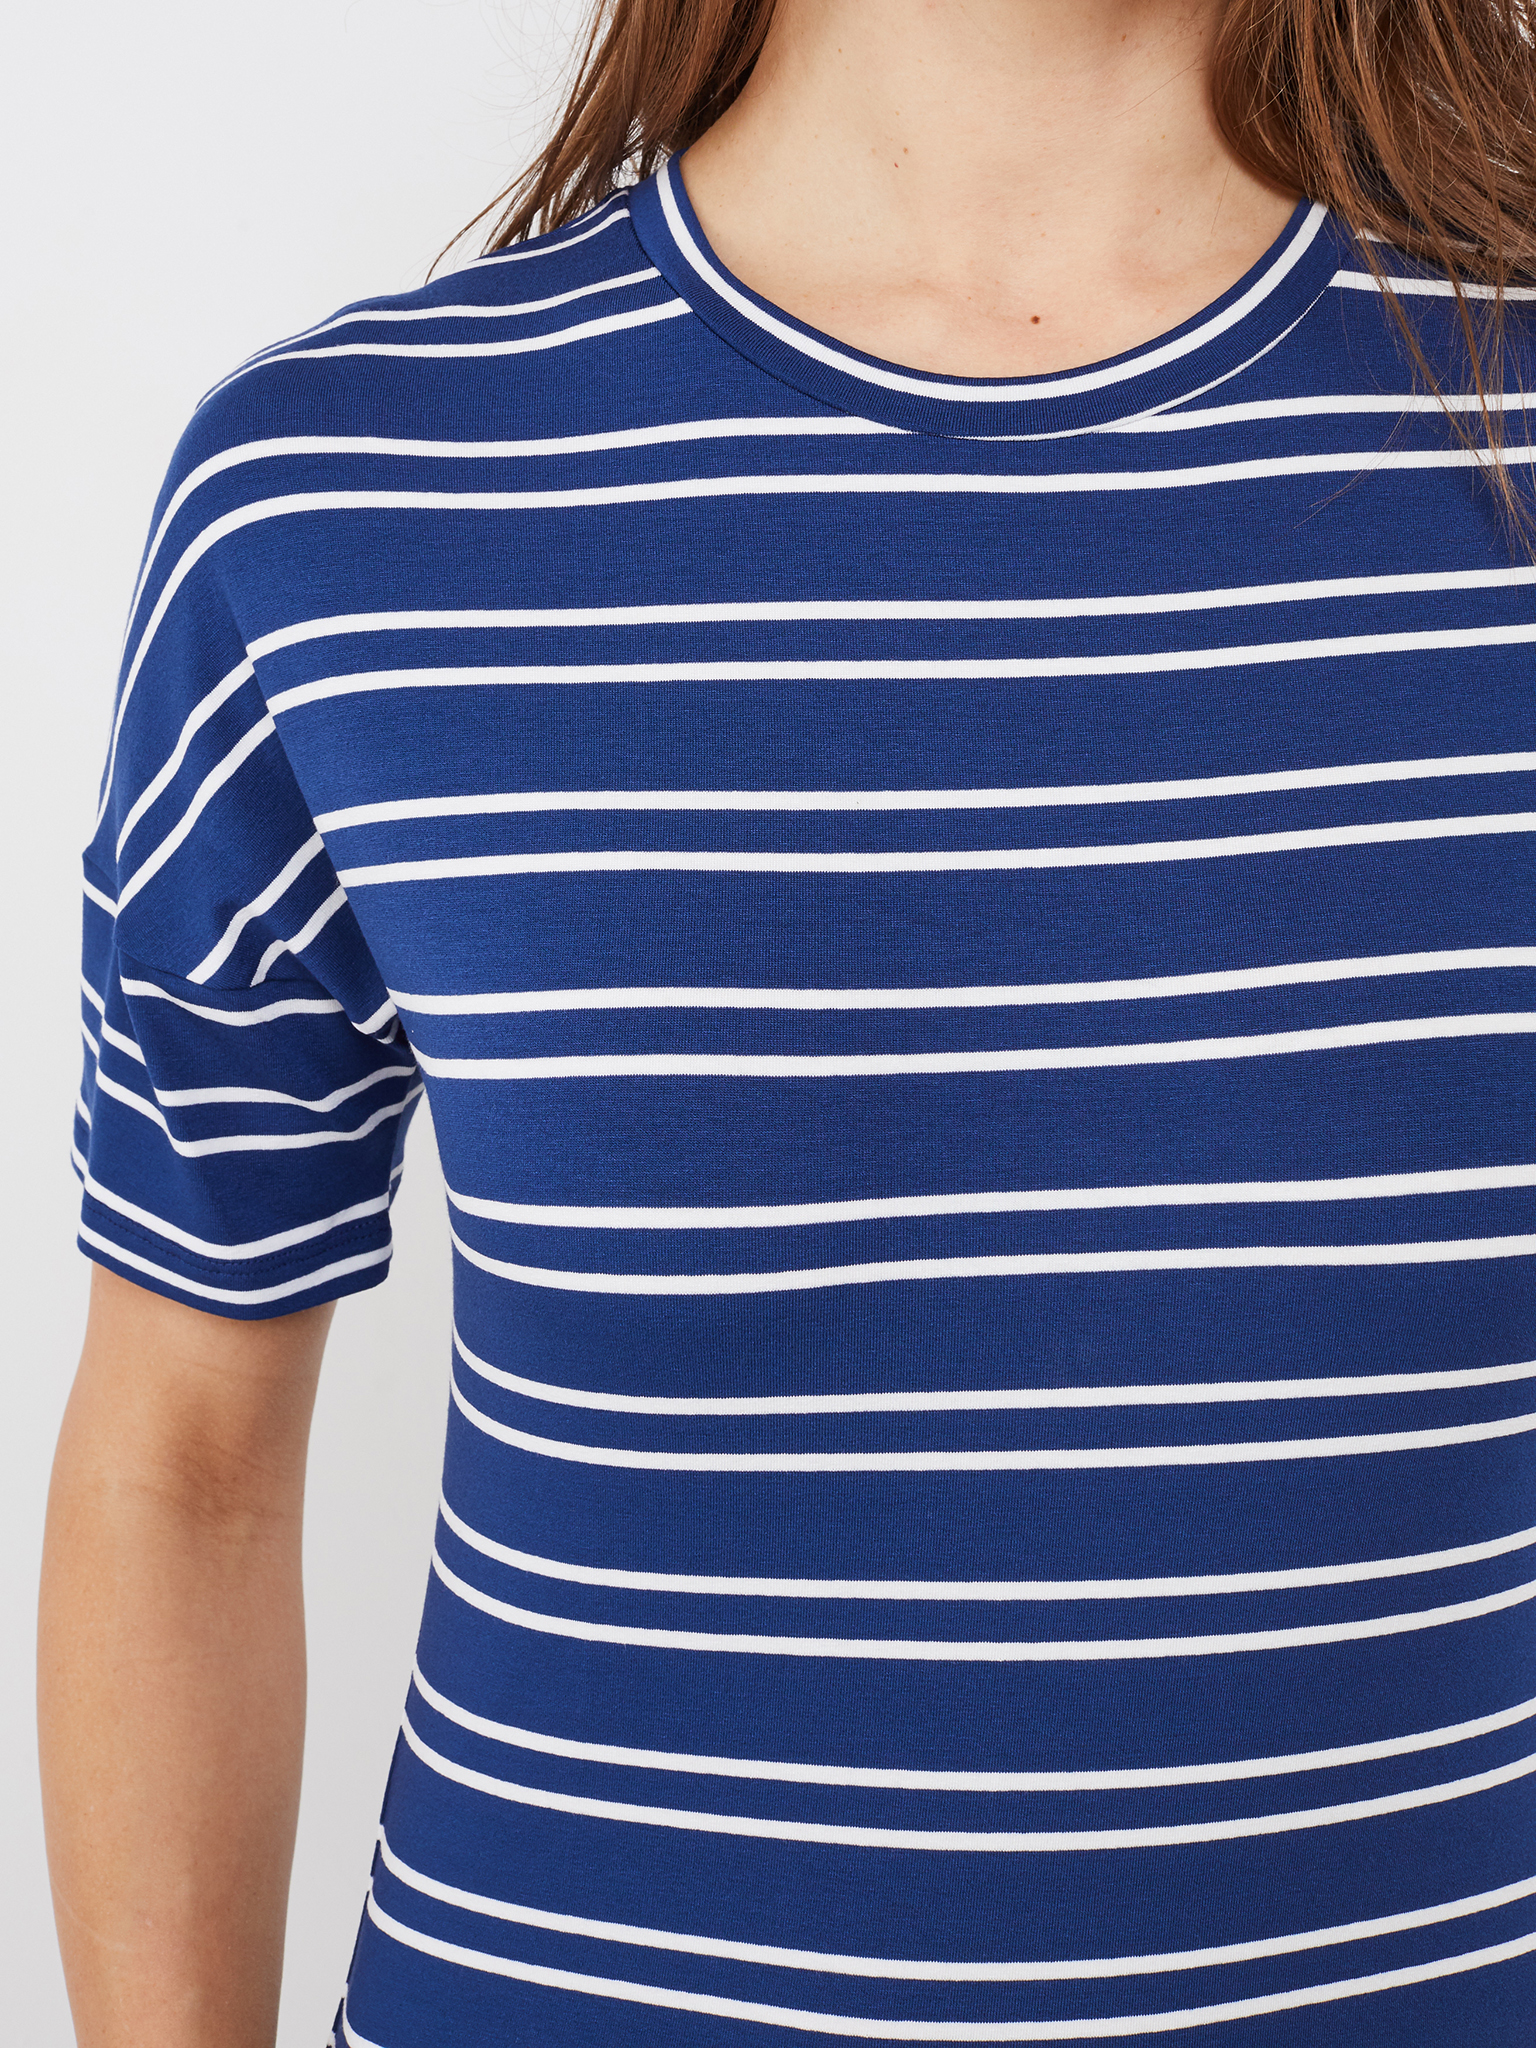 T-Shirt Blau-Weiß gestreift mit U-Boot-Ausschnitt